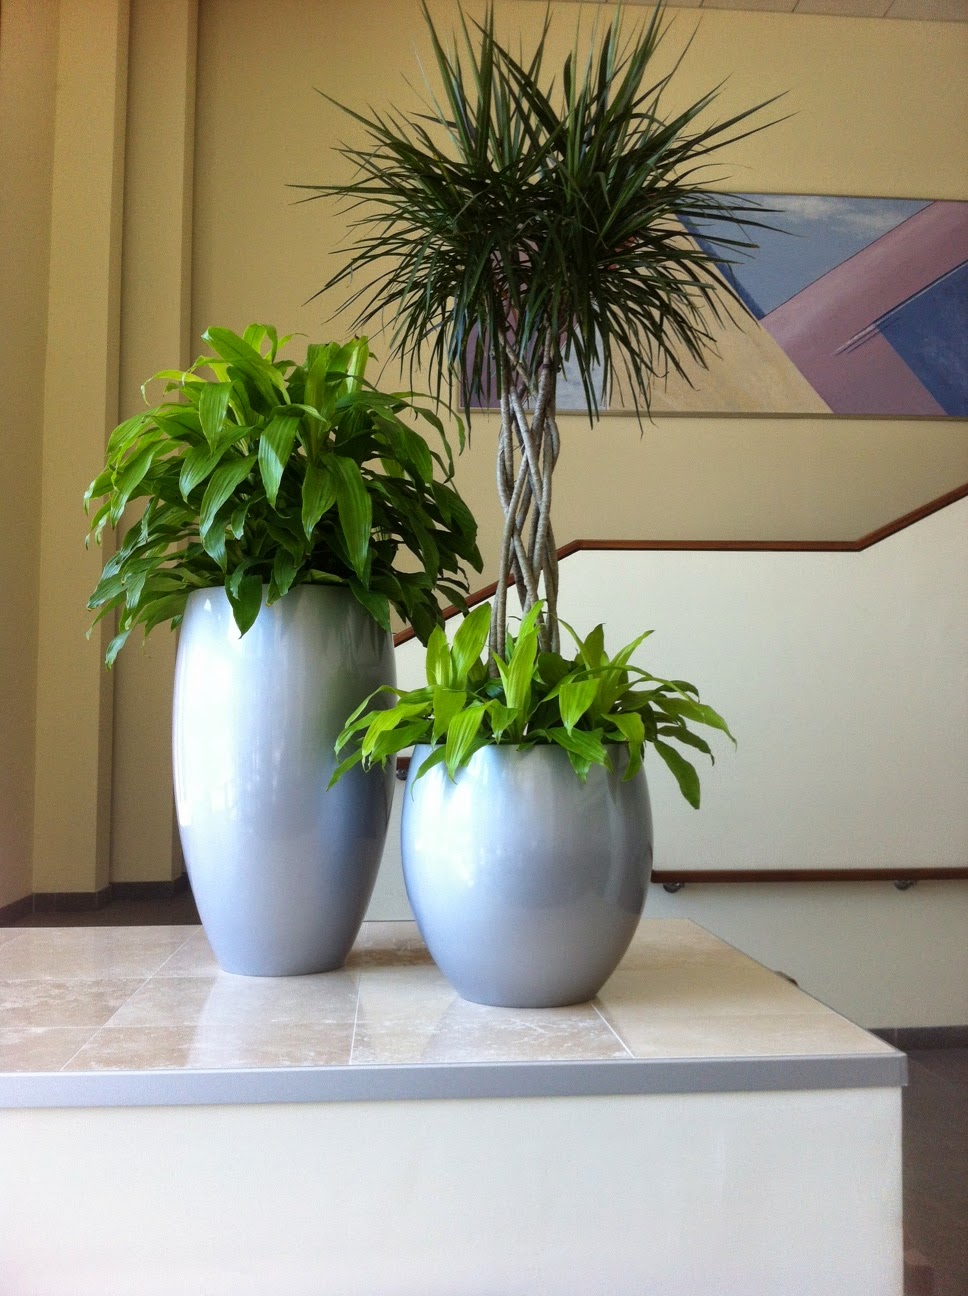 Cambridge, MA interior office plants